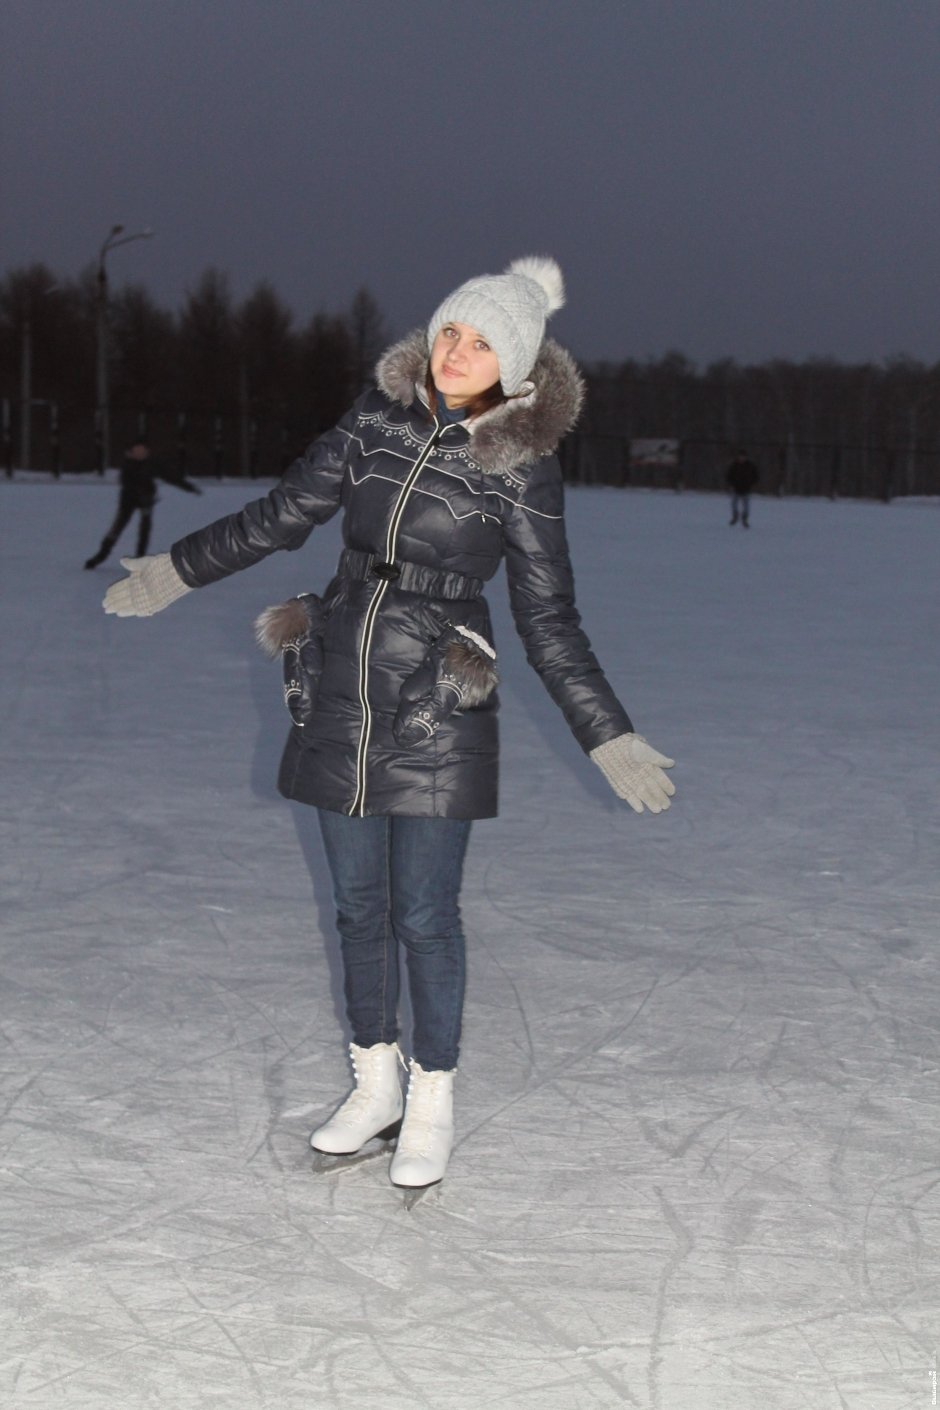 Екатерина, 20 лет, студентка Во-первых, Дед Мороз уже в годах — ему тяжко на коньках всю ночь колесить. Во-вторых, на коньках нельзя увезти очень большой мешок.